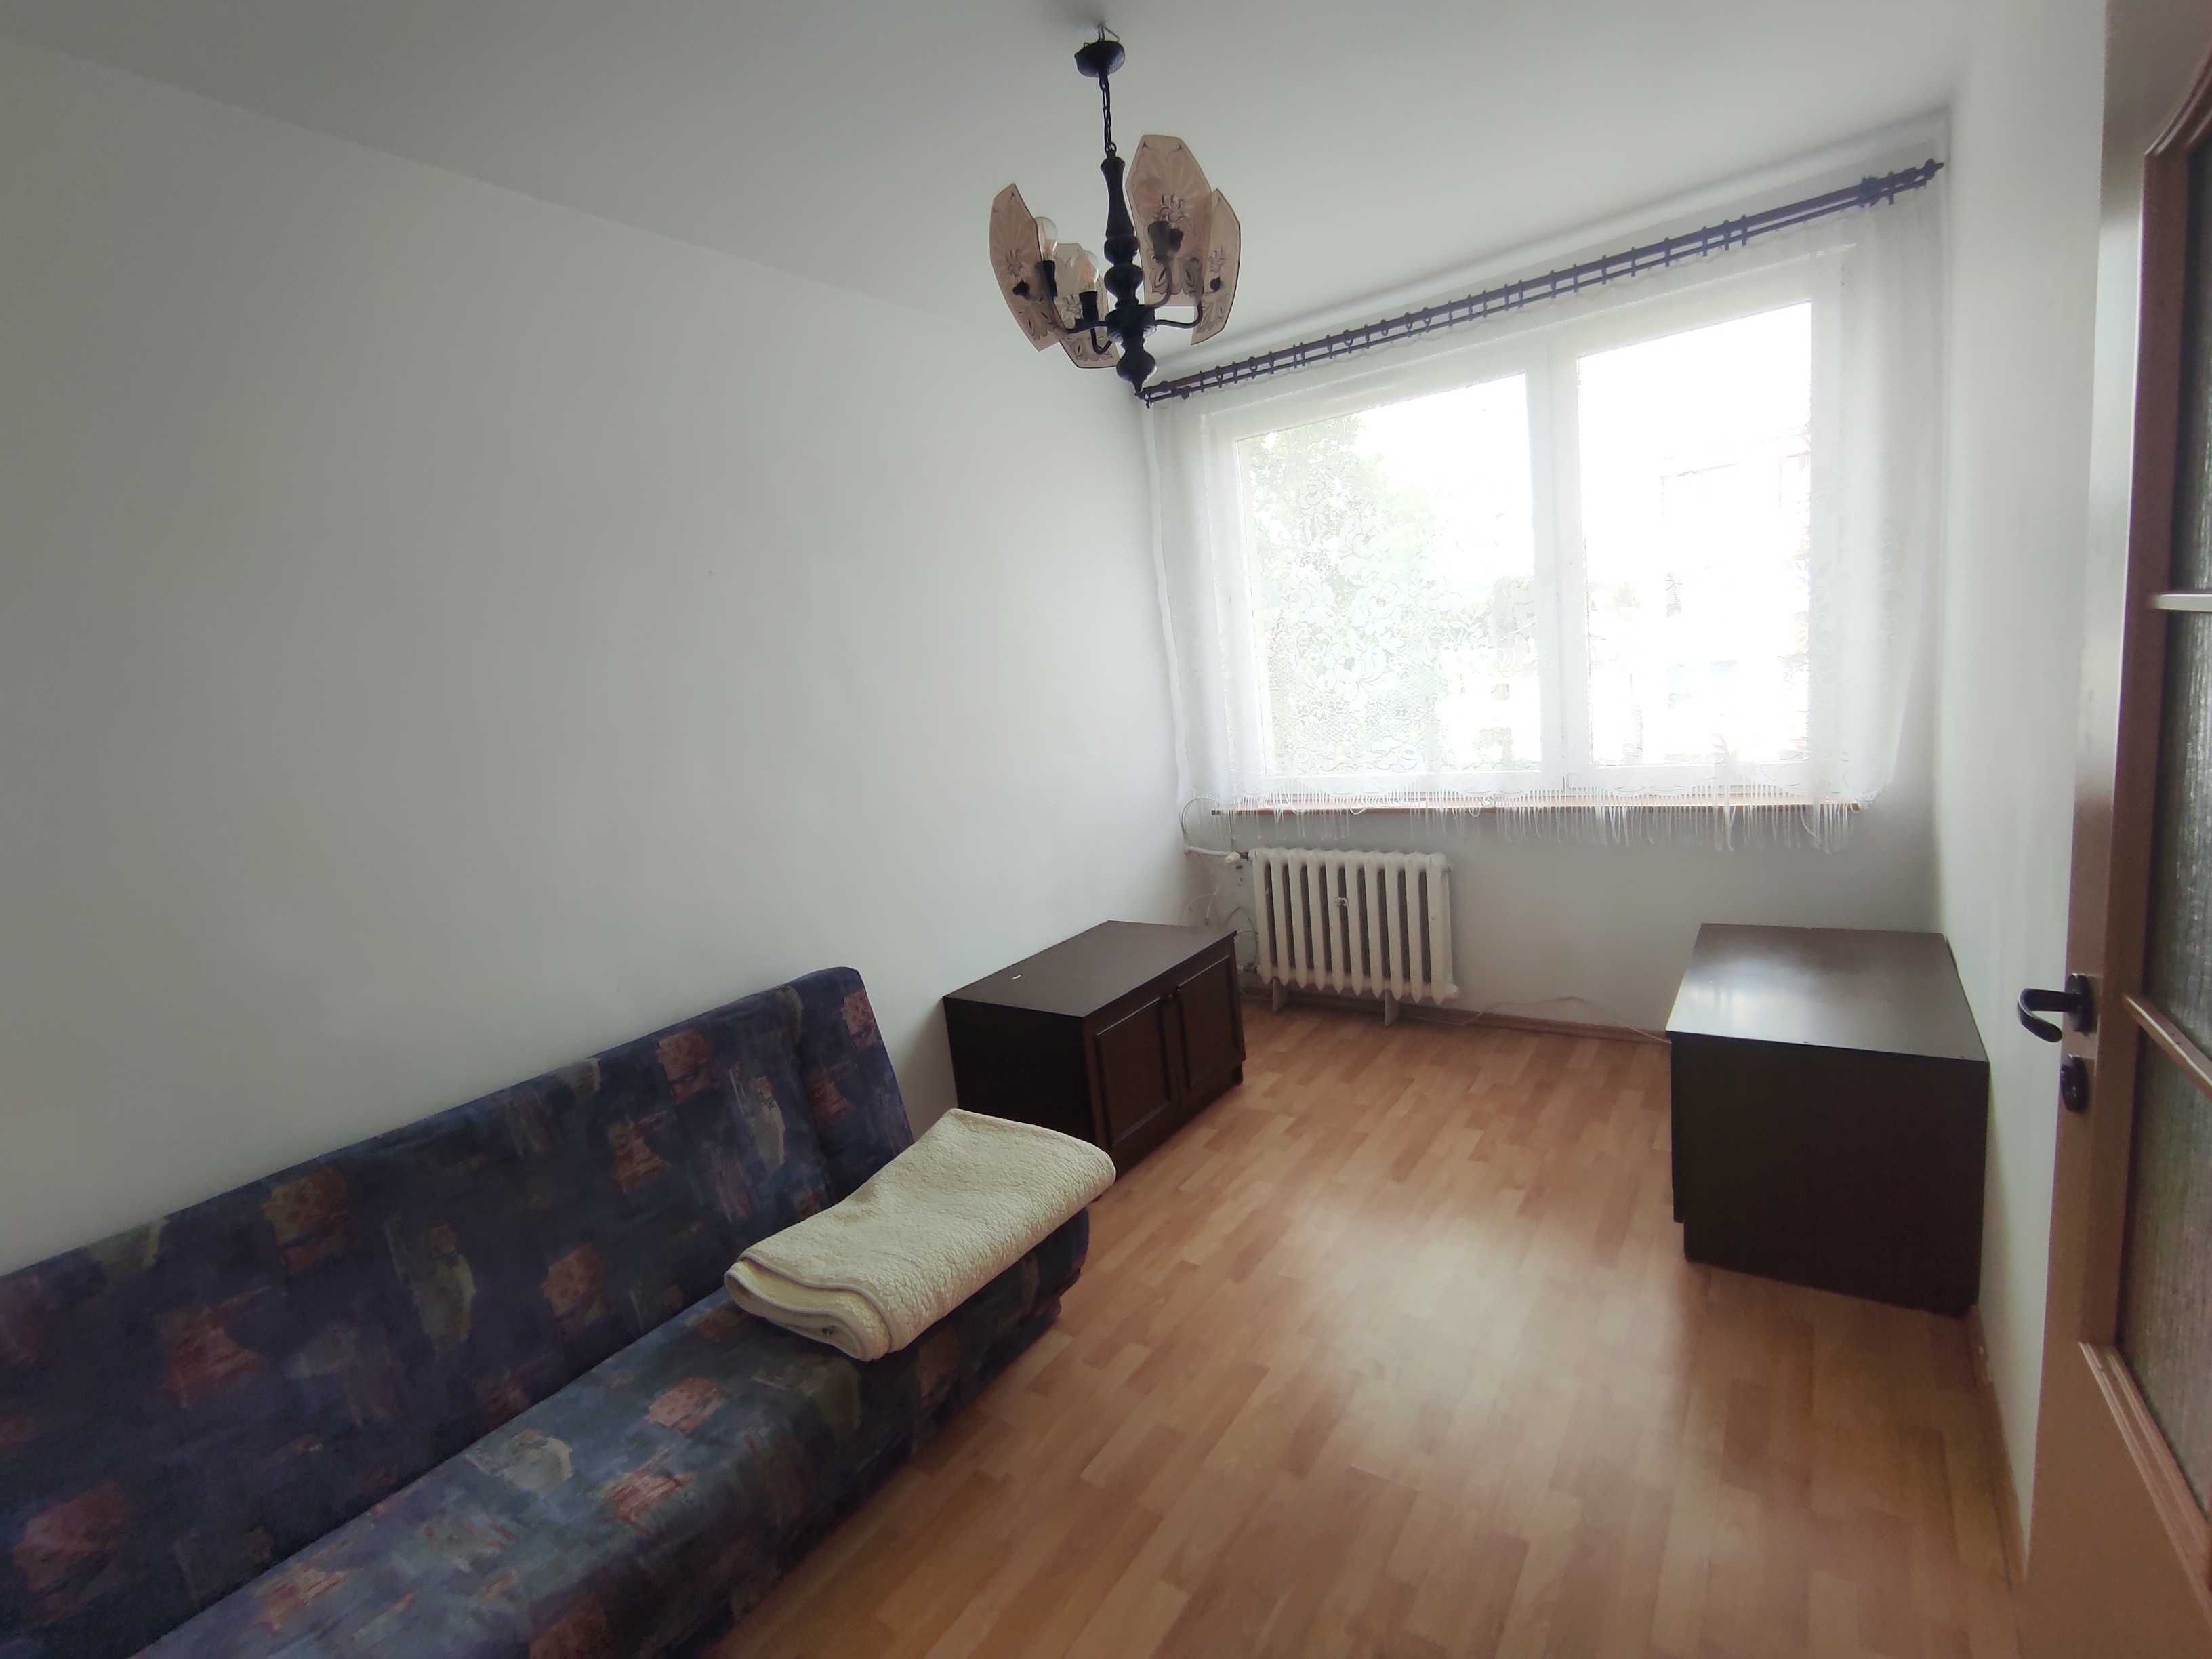 Sprzedam mieszkanie Piaskowa Góra Kuchnia z oknem 2 pokoje cisza